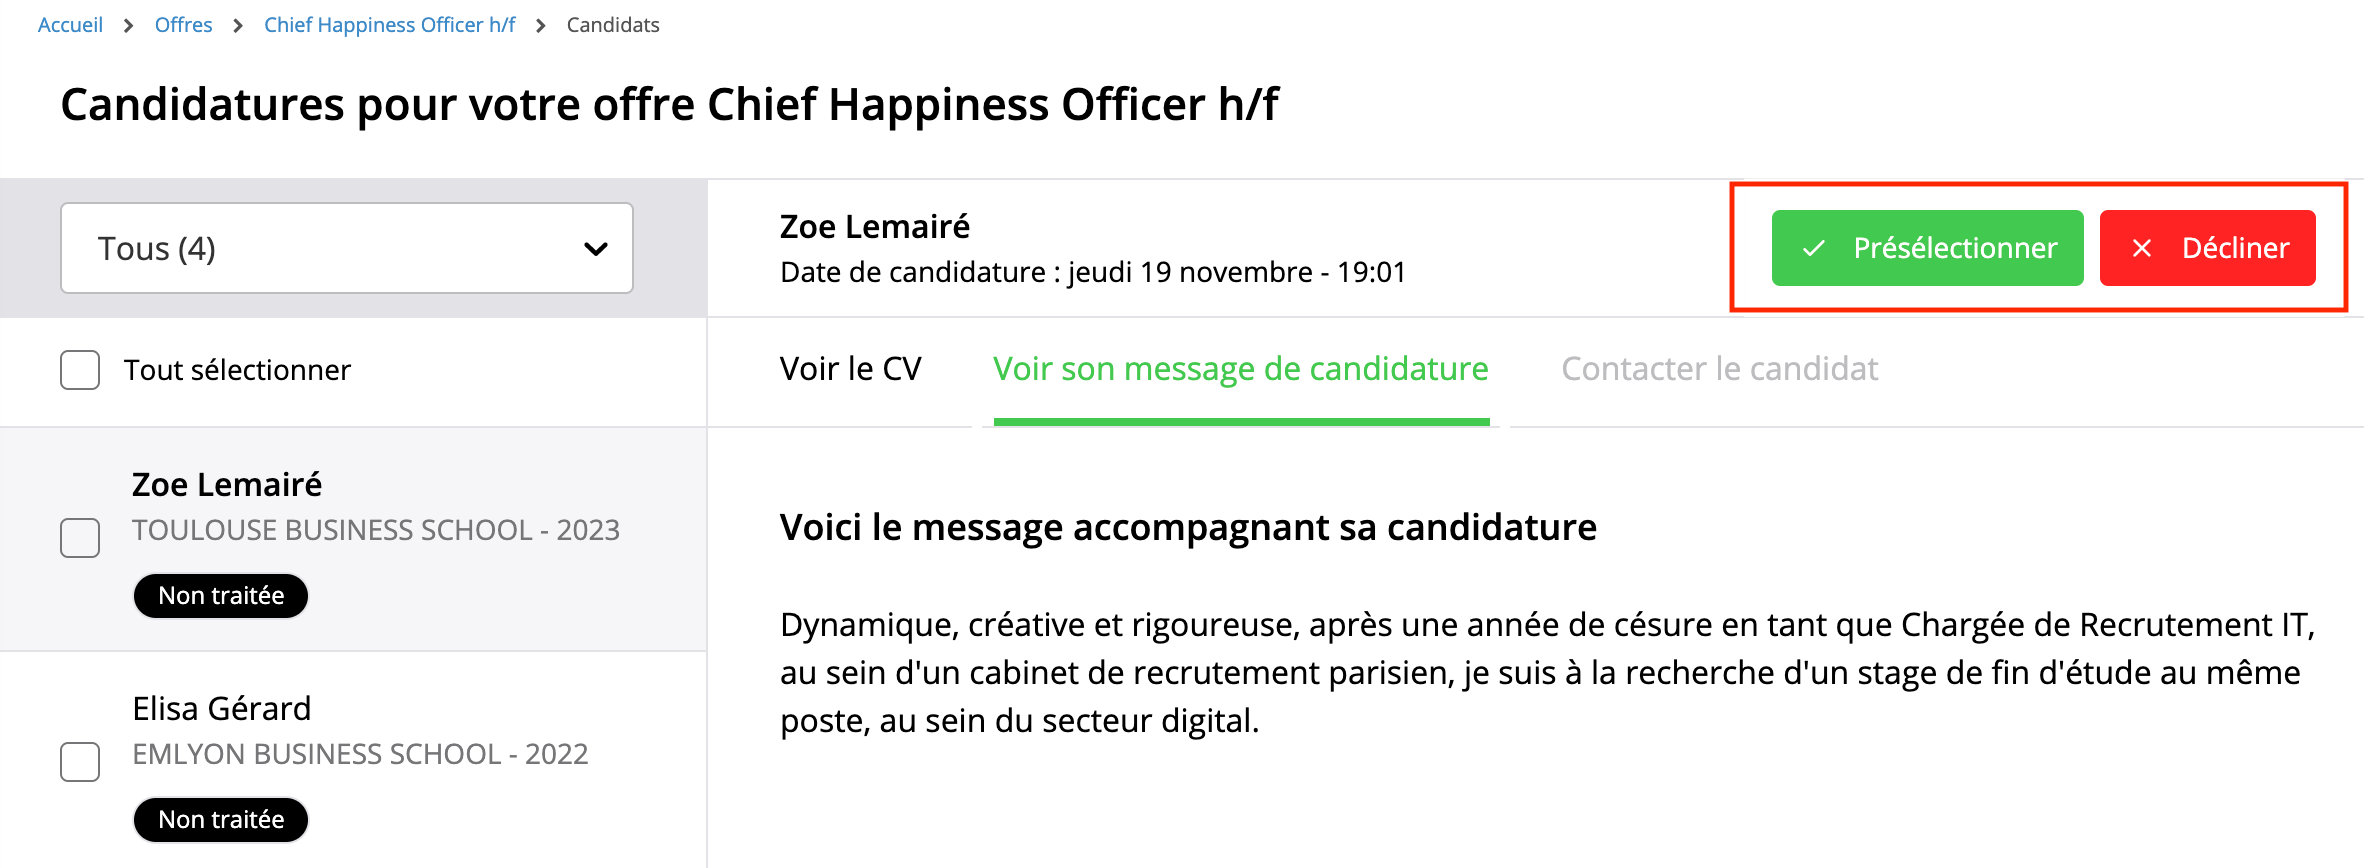 Voir_le_message_de_candidature.png